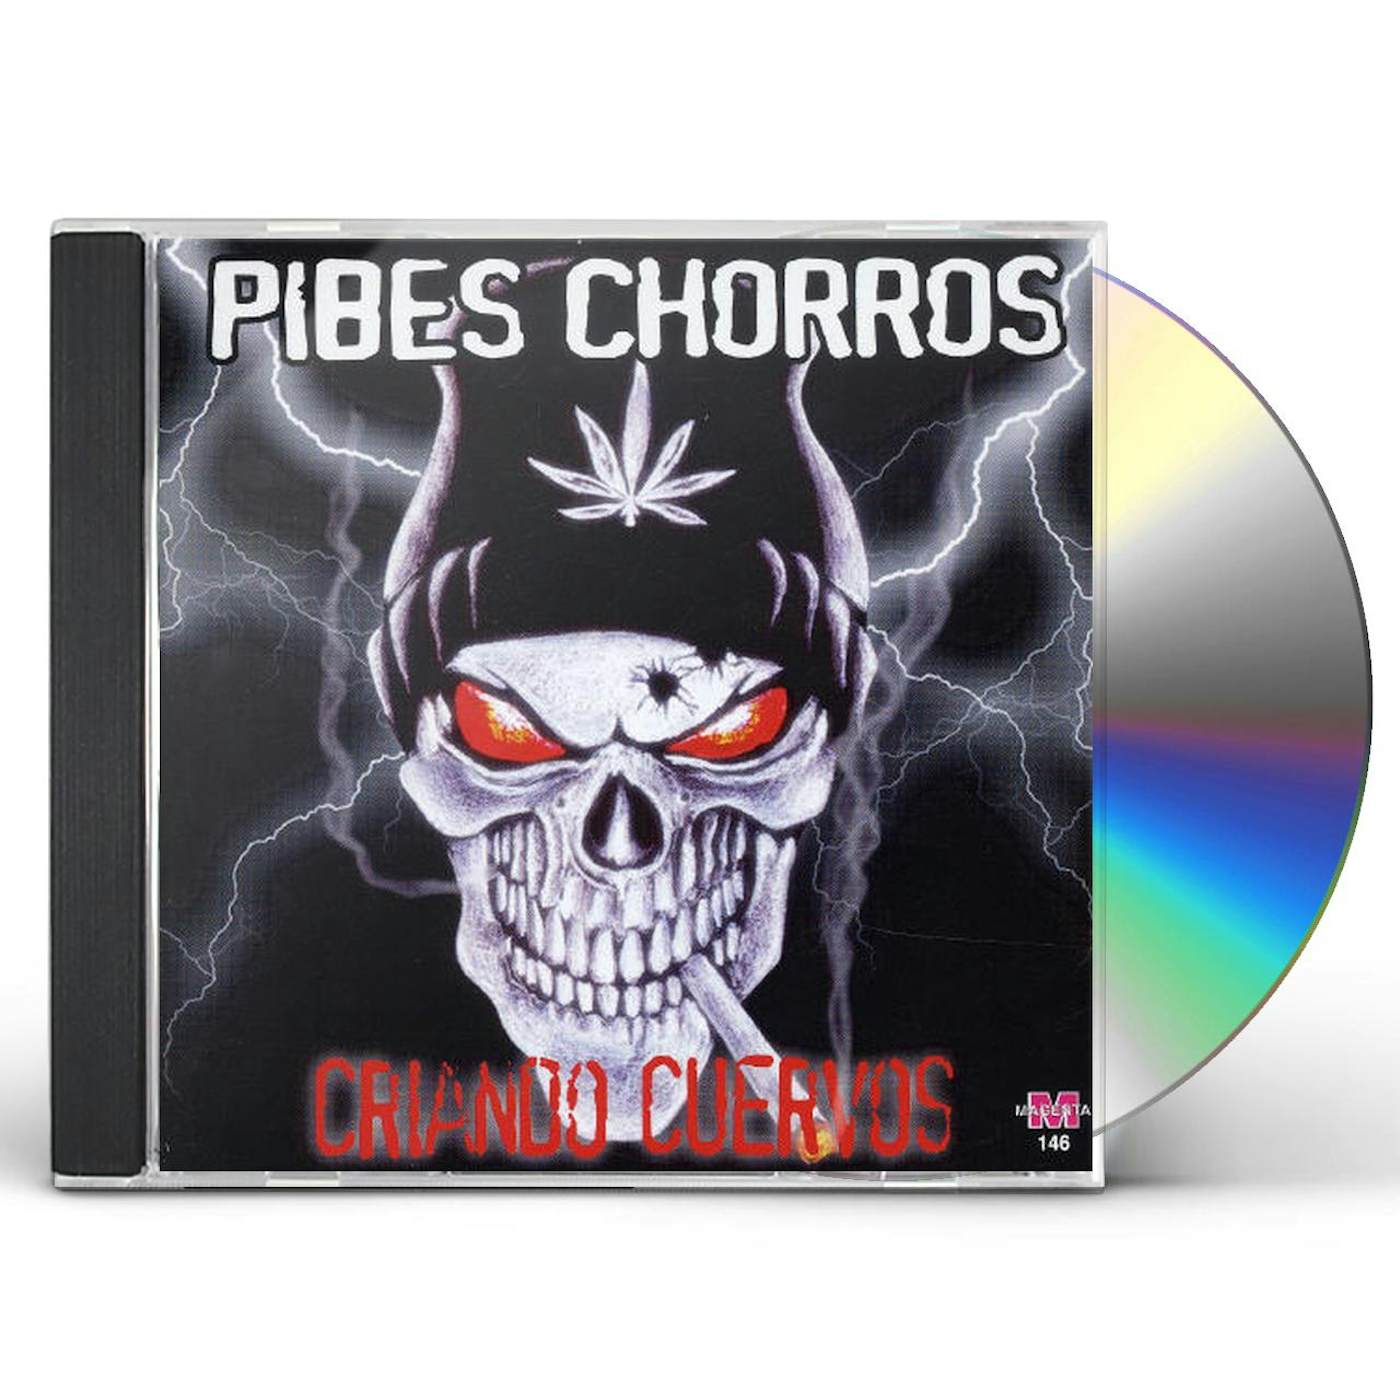 criando cuervos cd - Pibes Chorros